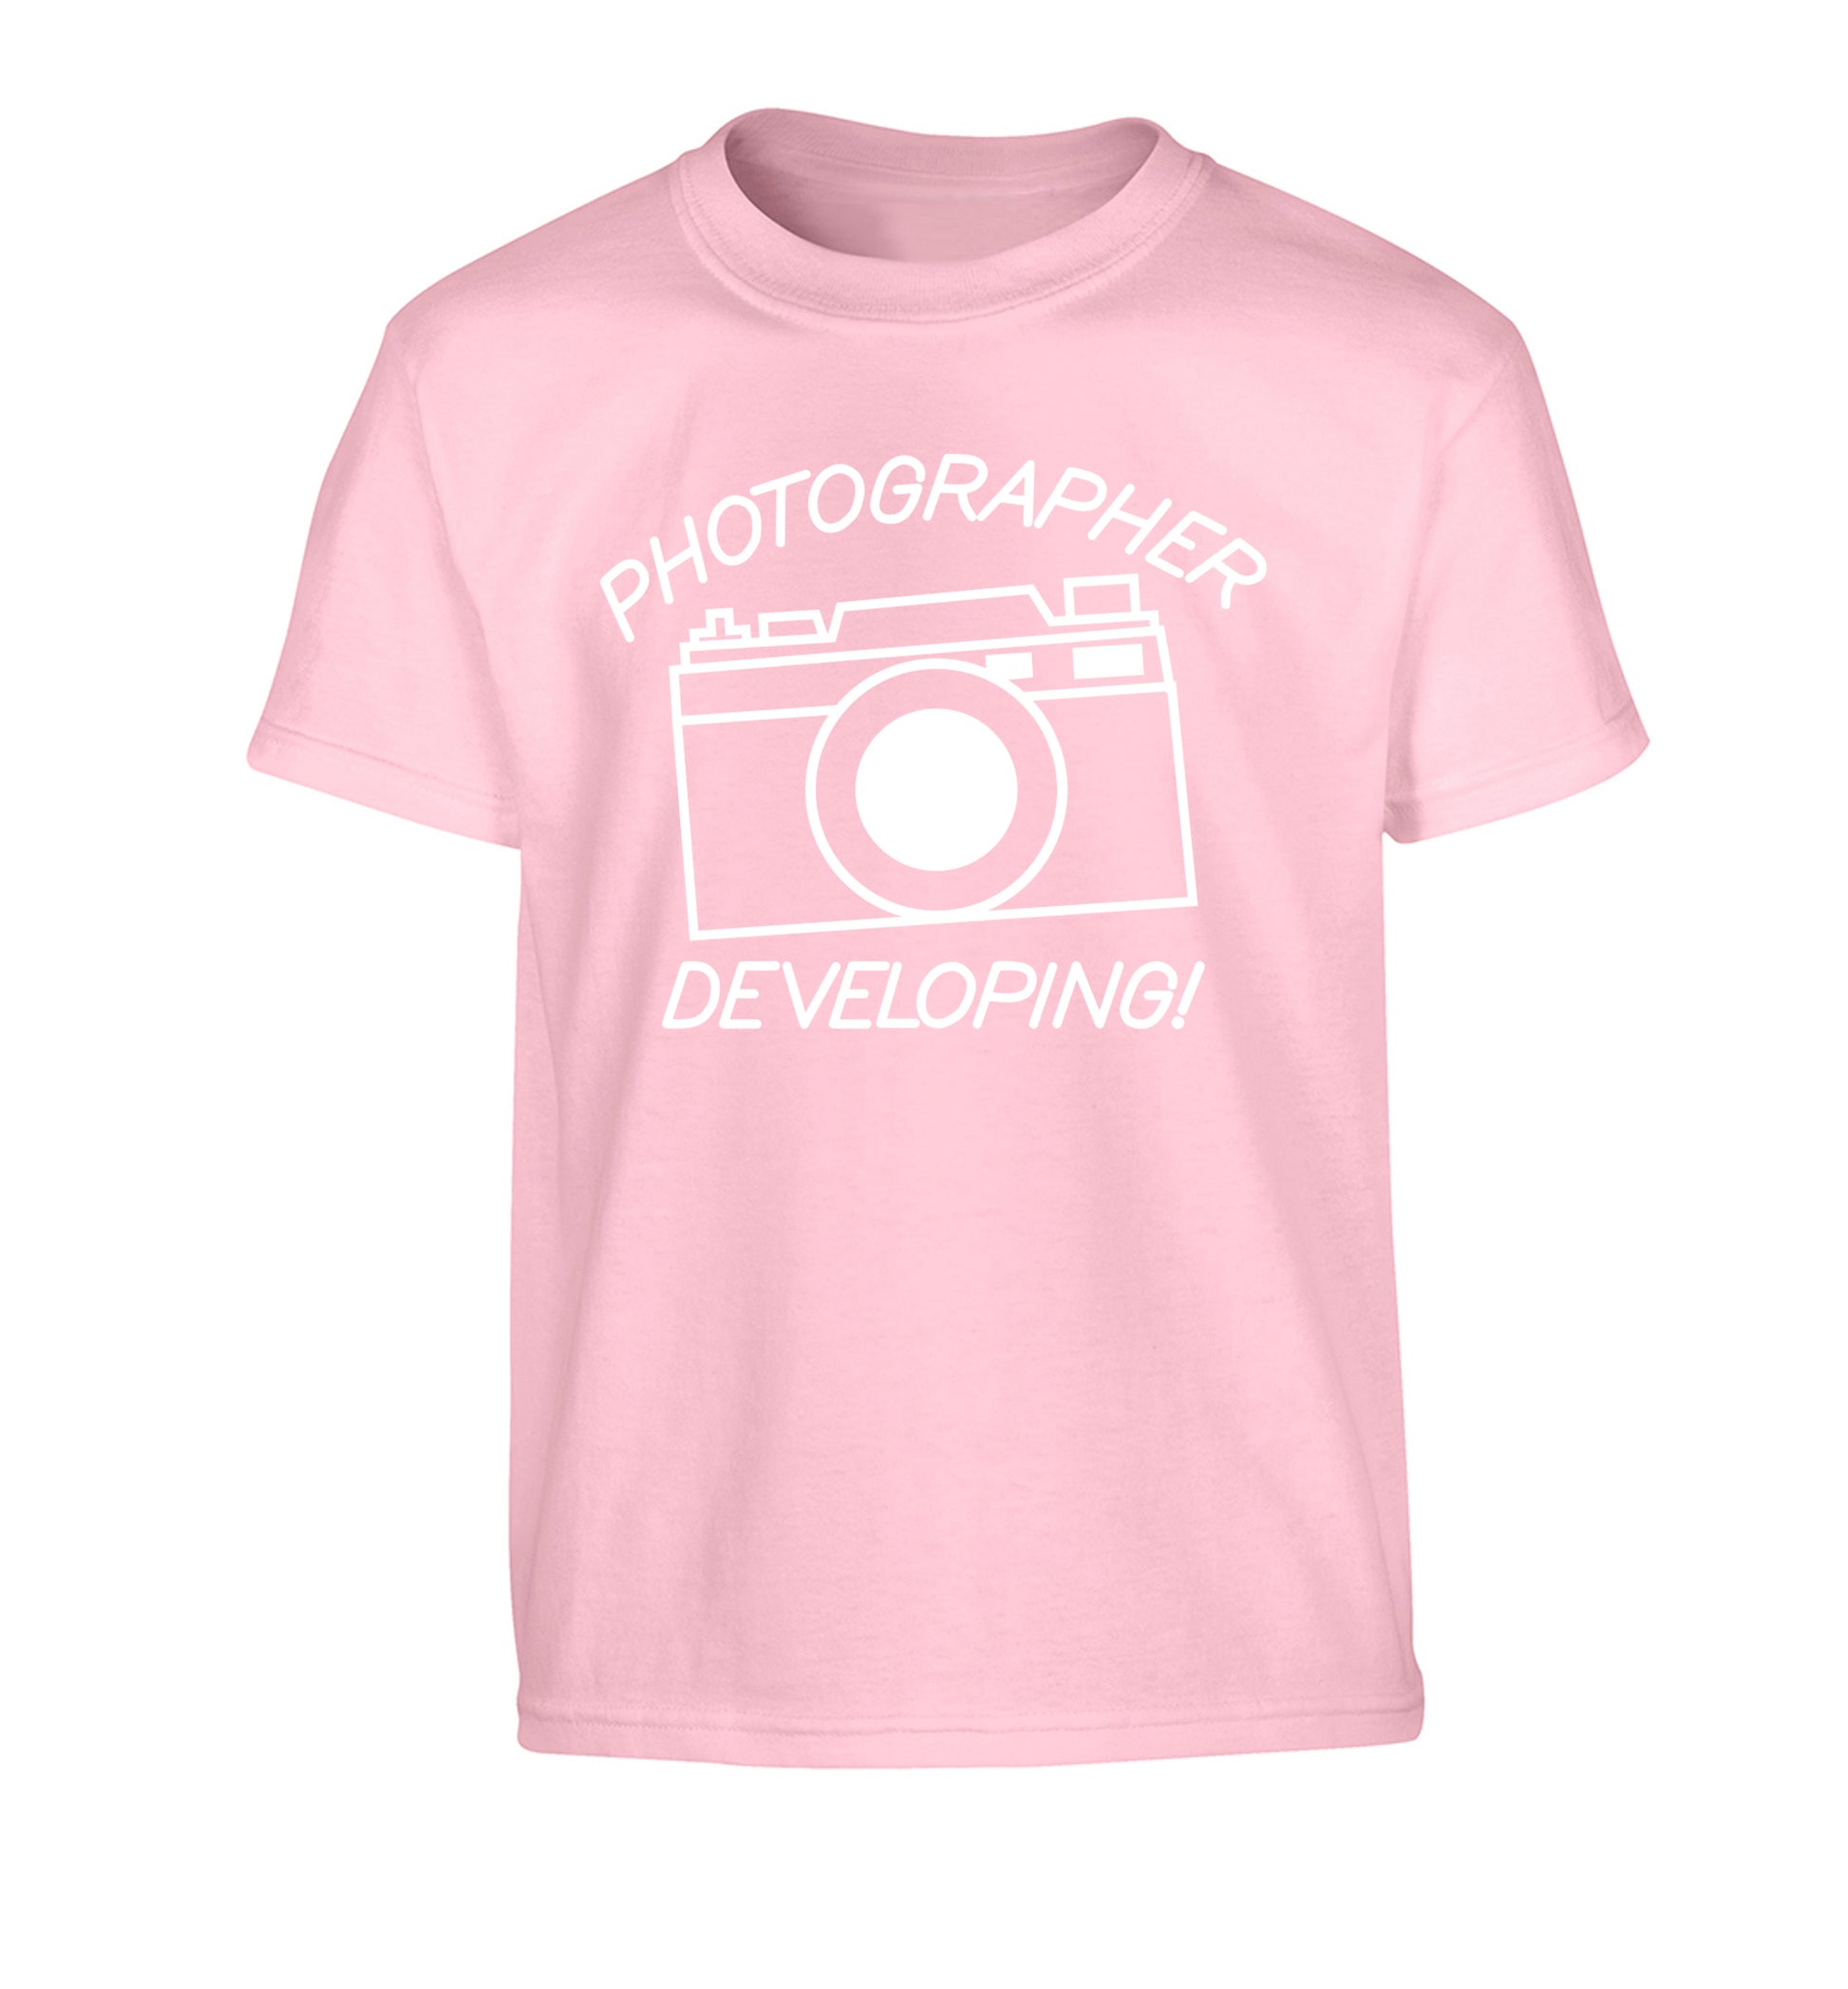 Photographer Developing  Children's light pink Tshirt 12-13 Years